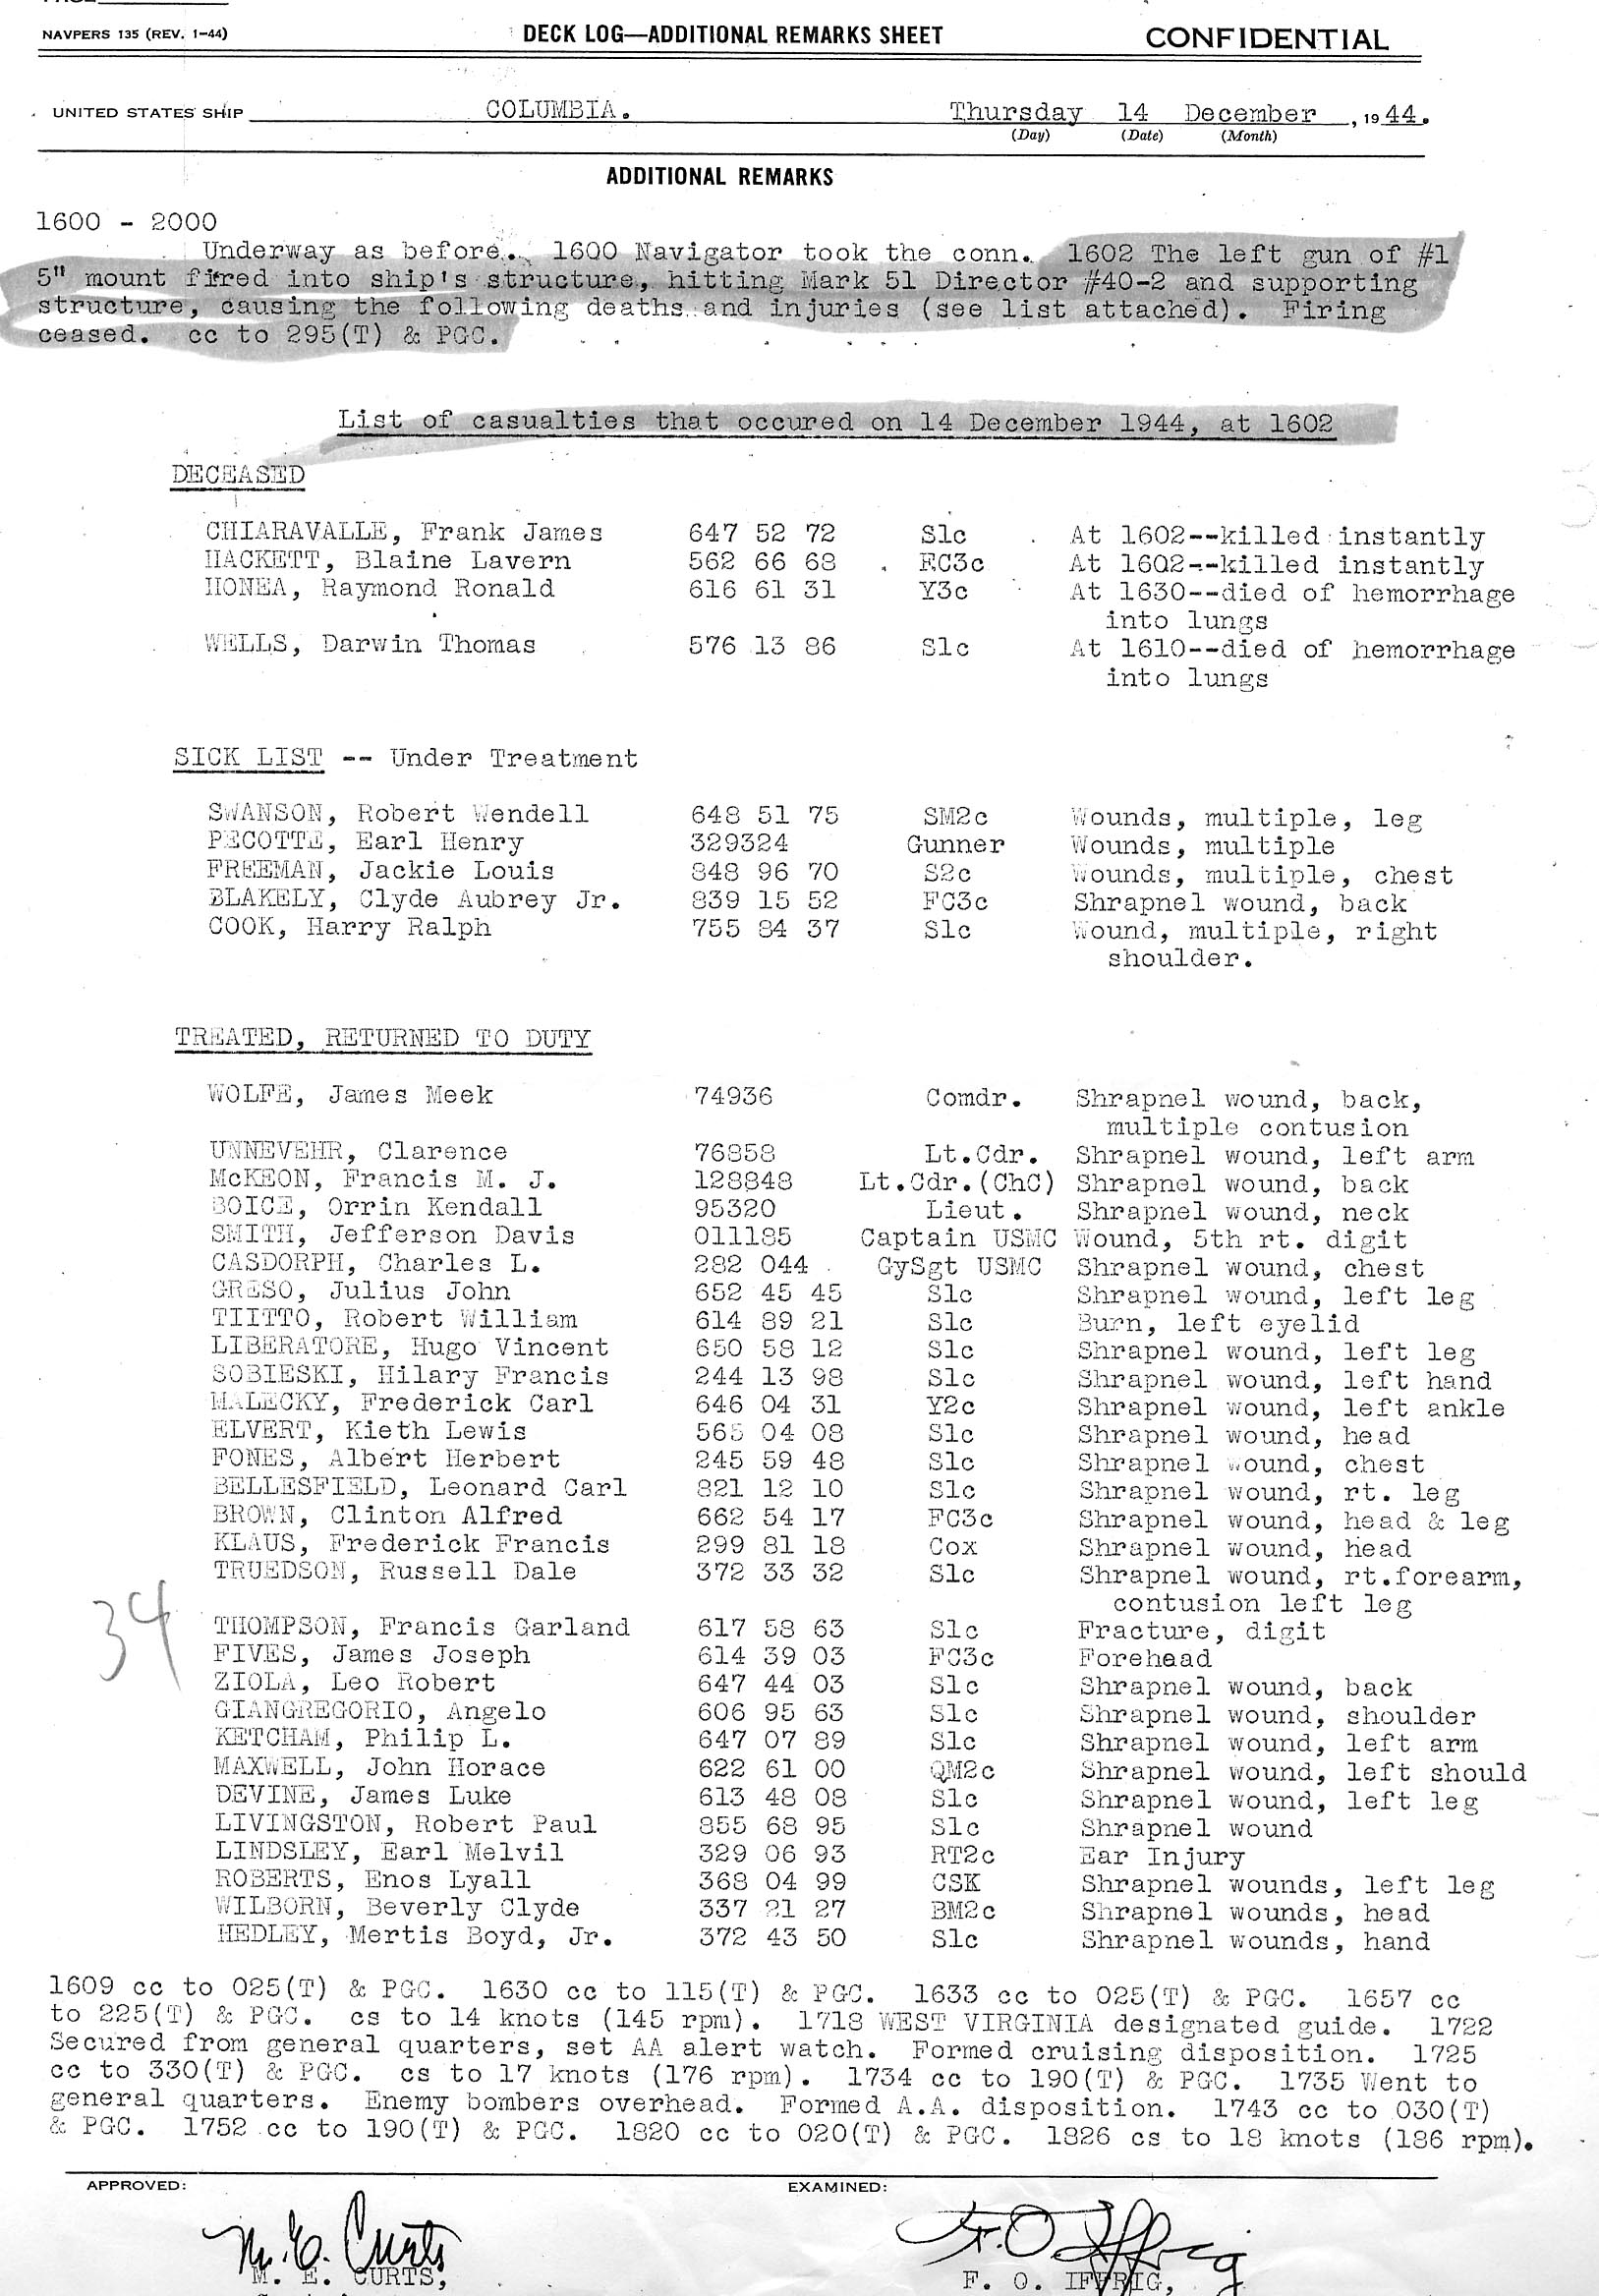 December 14, 1945 Gun accident sheet 2